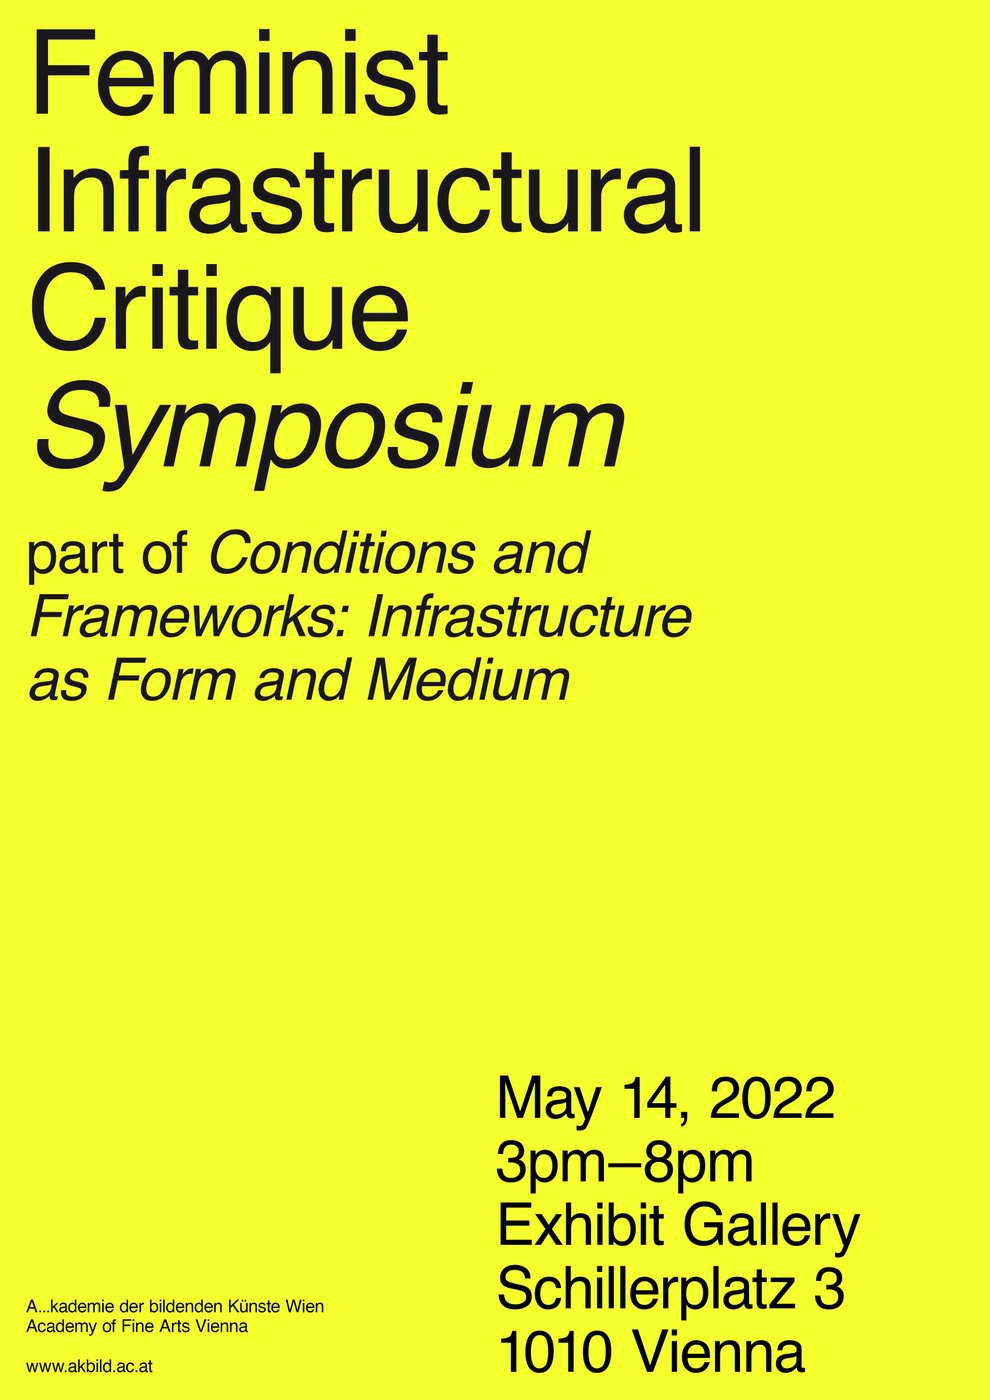 Ein typografisches Motiv. Der Titel der Veranstaltung auf gelbem Hintergrund.